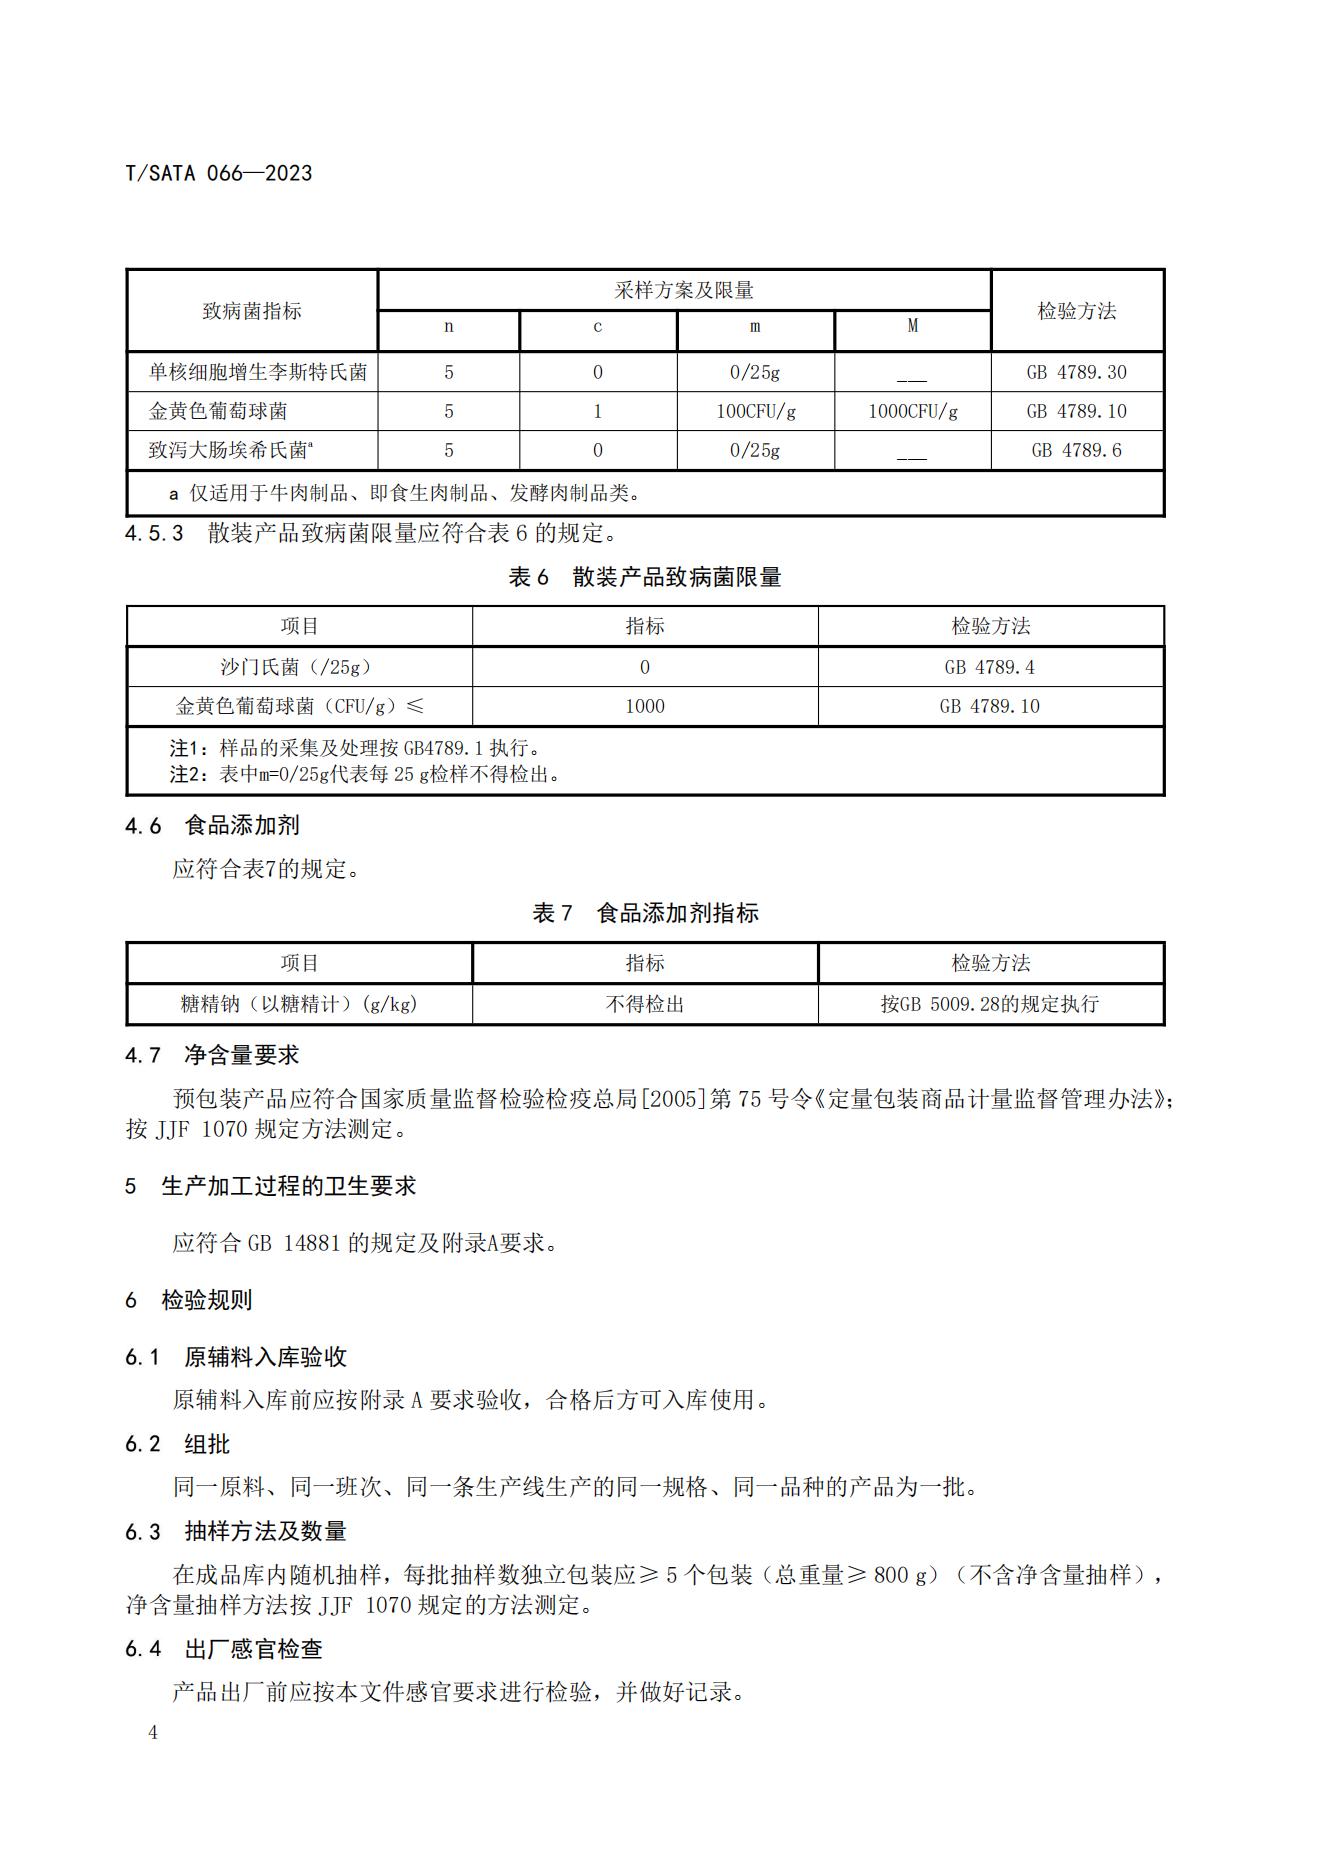 TSATA 066-2023 小作坊食品  熟肉制品(1)_07.jpg